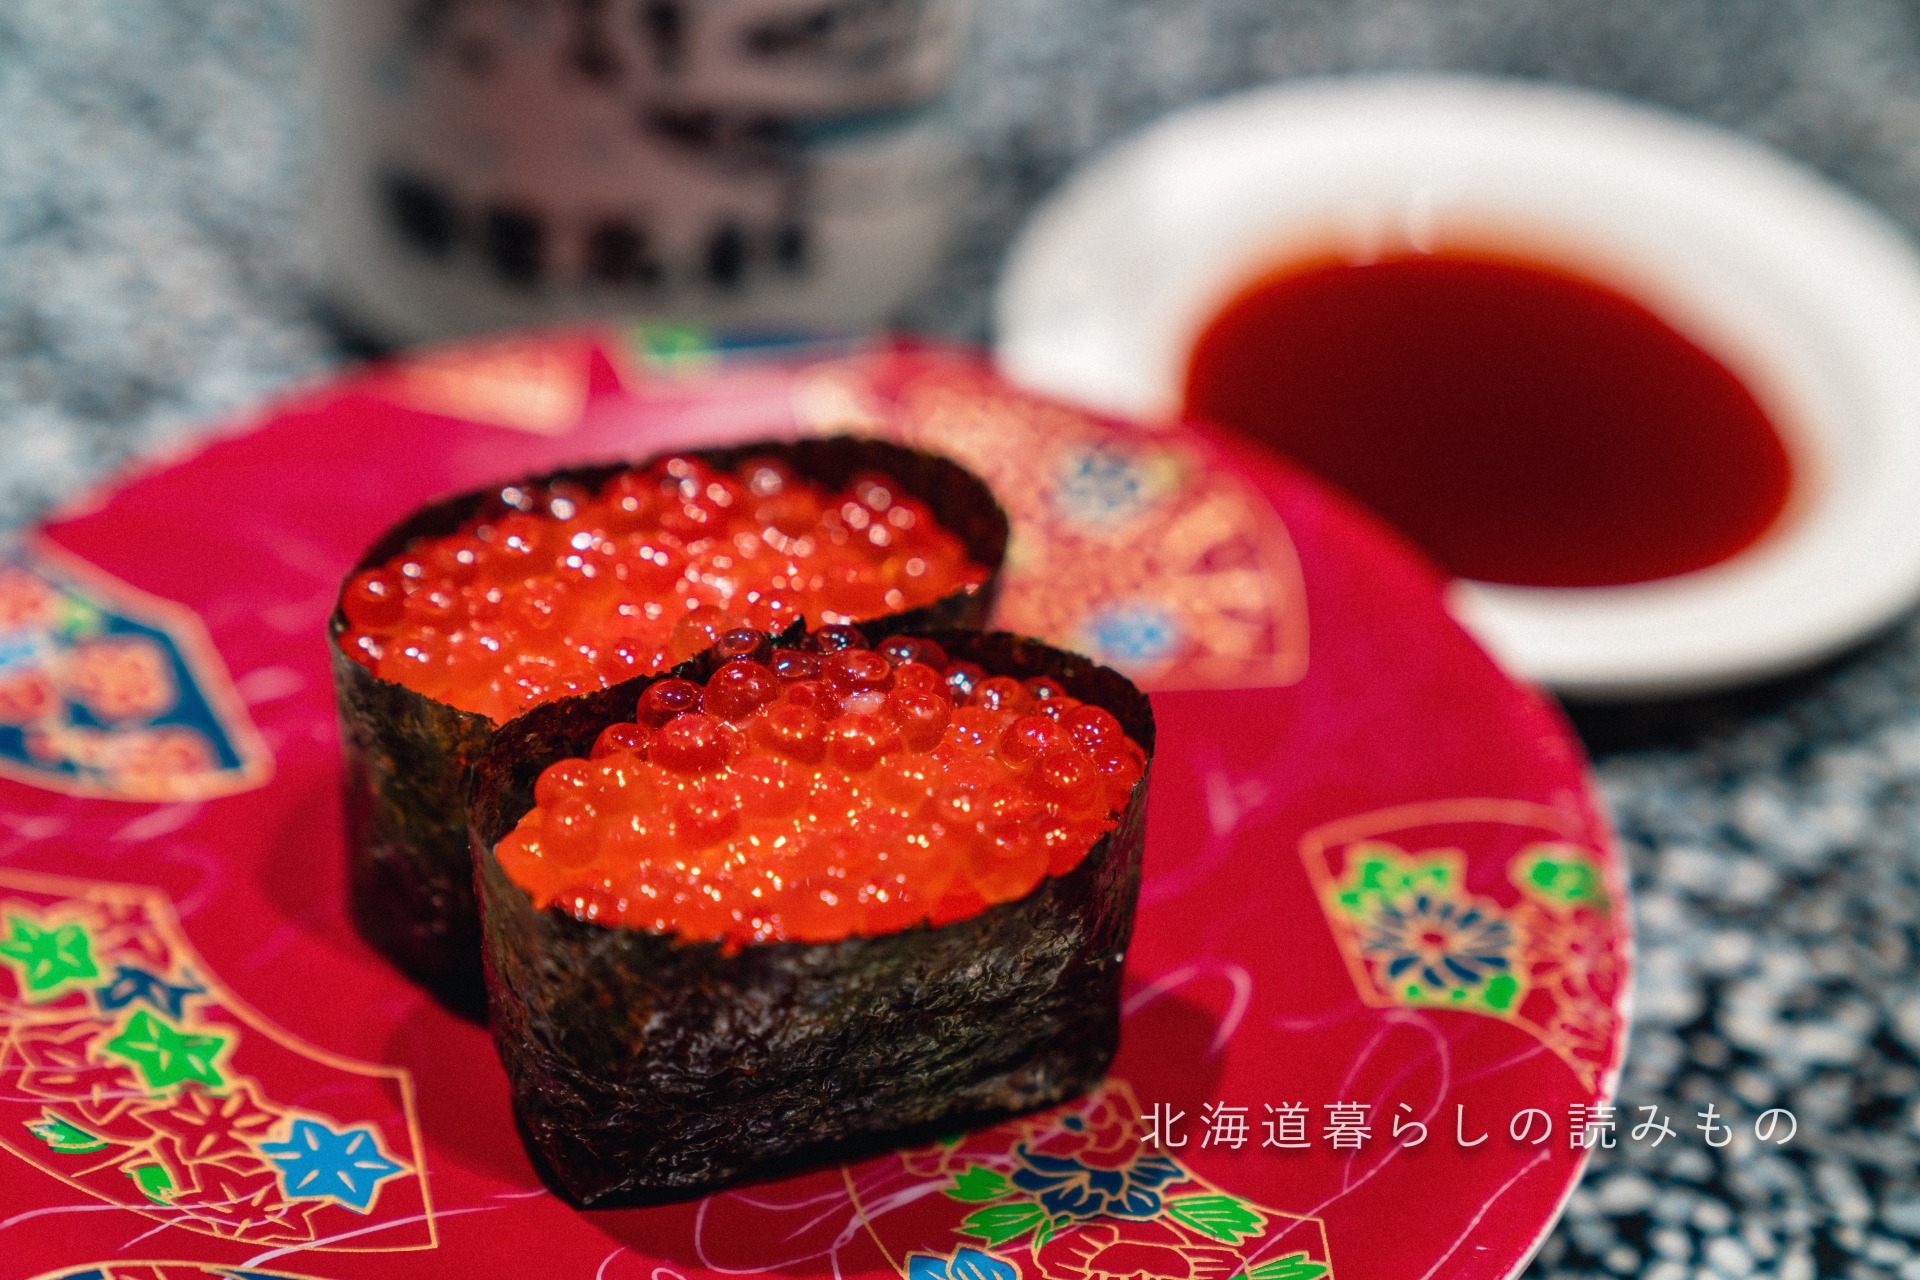 回転寿司 根室花まるのメニュー「いくら」の写真